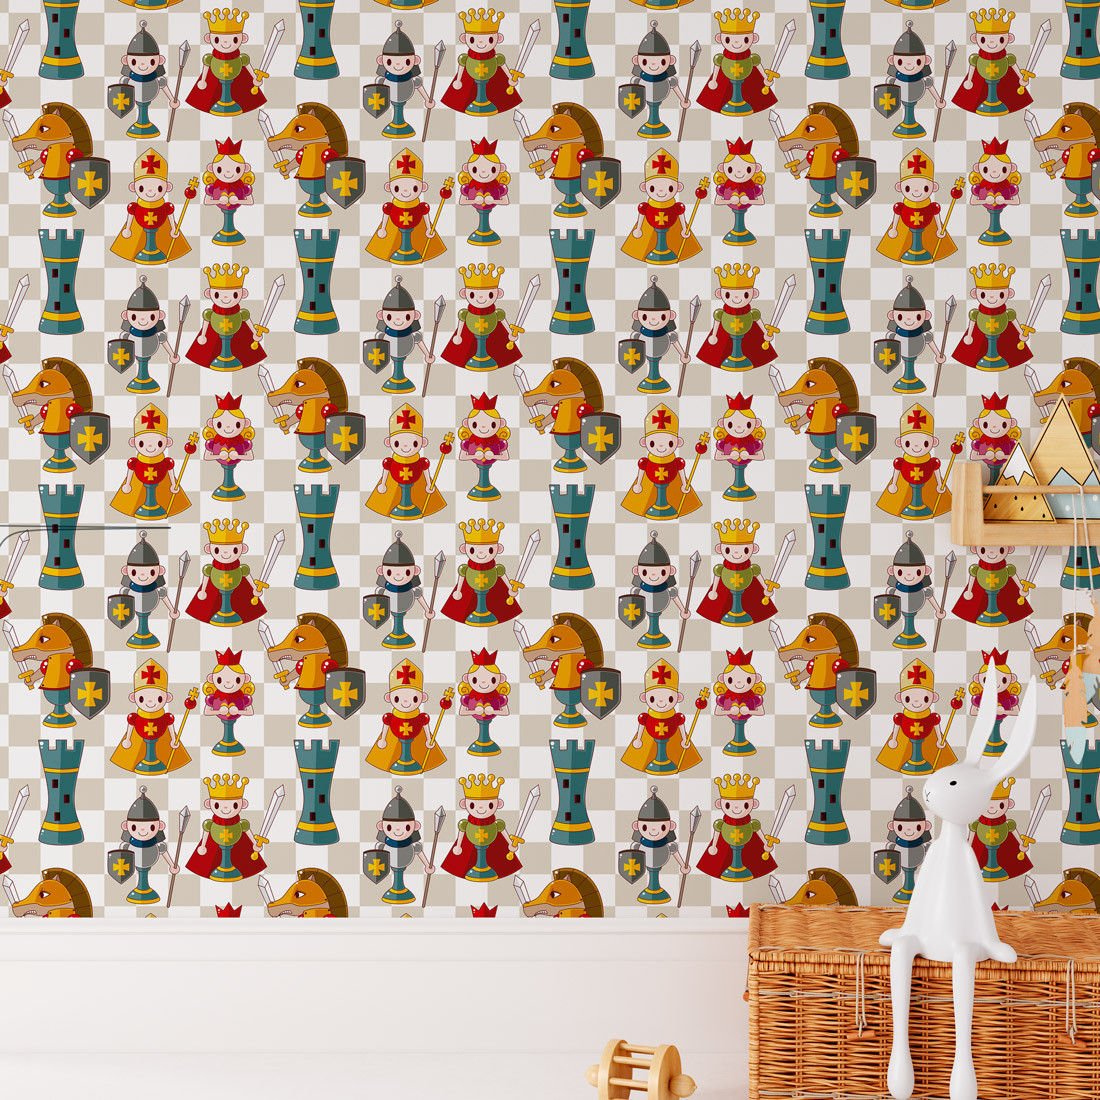 Papel de parede xadrez infantil  Produtos Personalizados no Elo7